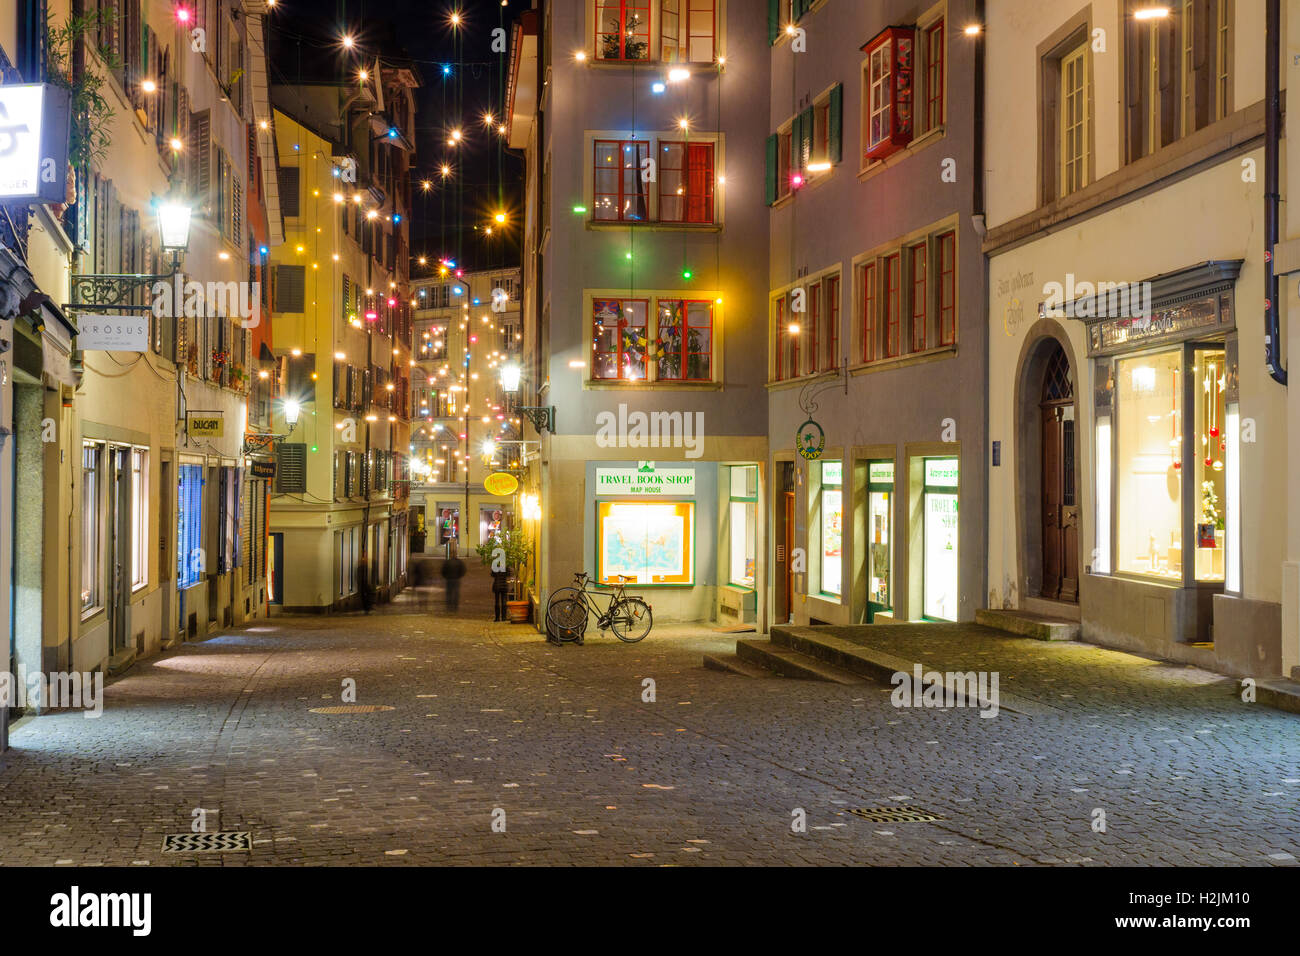 Zürich, Schweiz - 24. Dezember 2015: Nacht Straßenszene in der Altstadt (Altstadt), mit Weihnachten Dekoration Lampen in multi Stockfoto